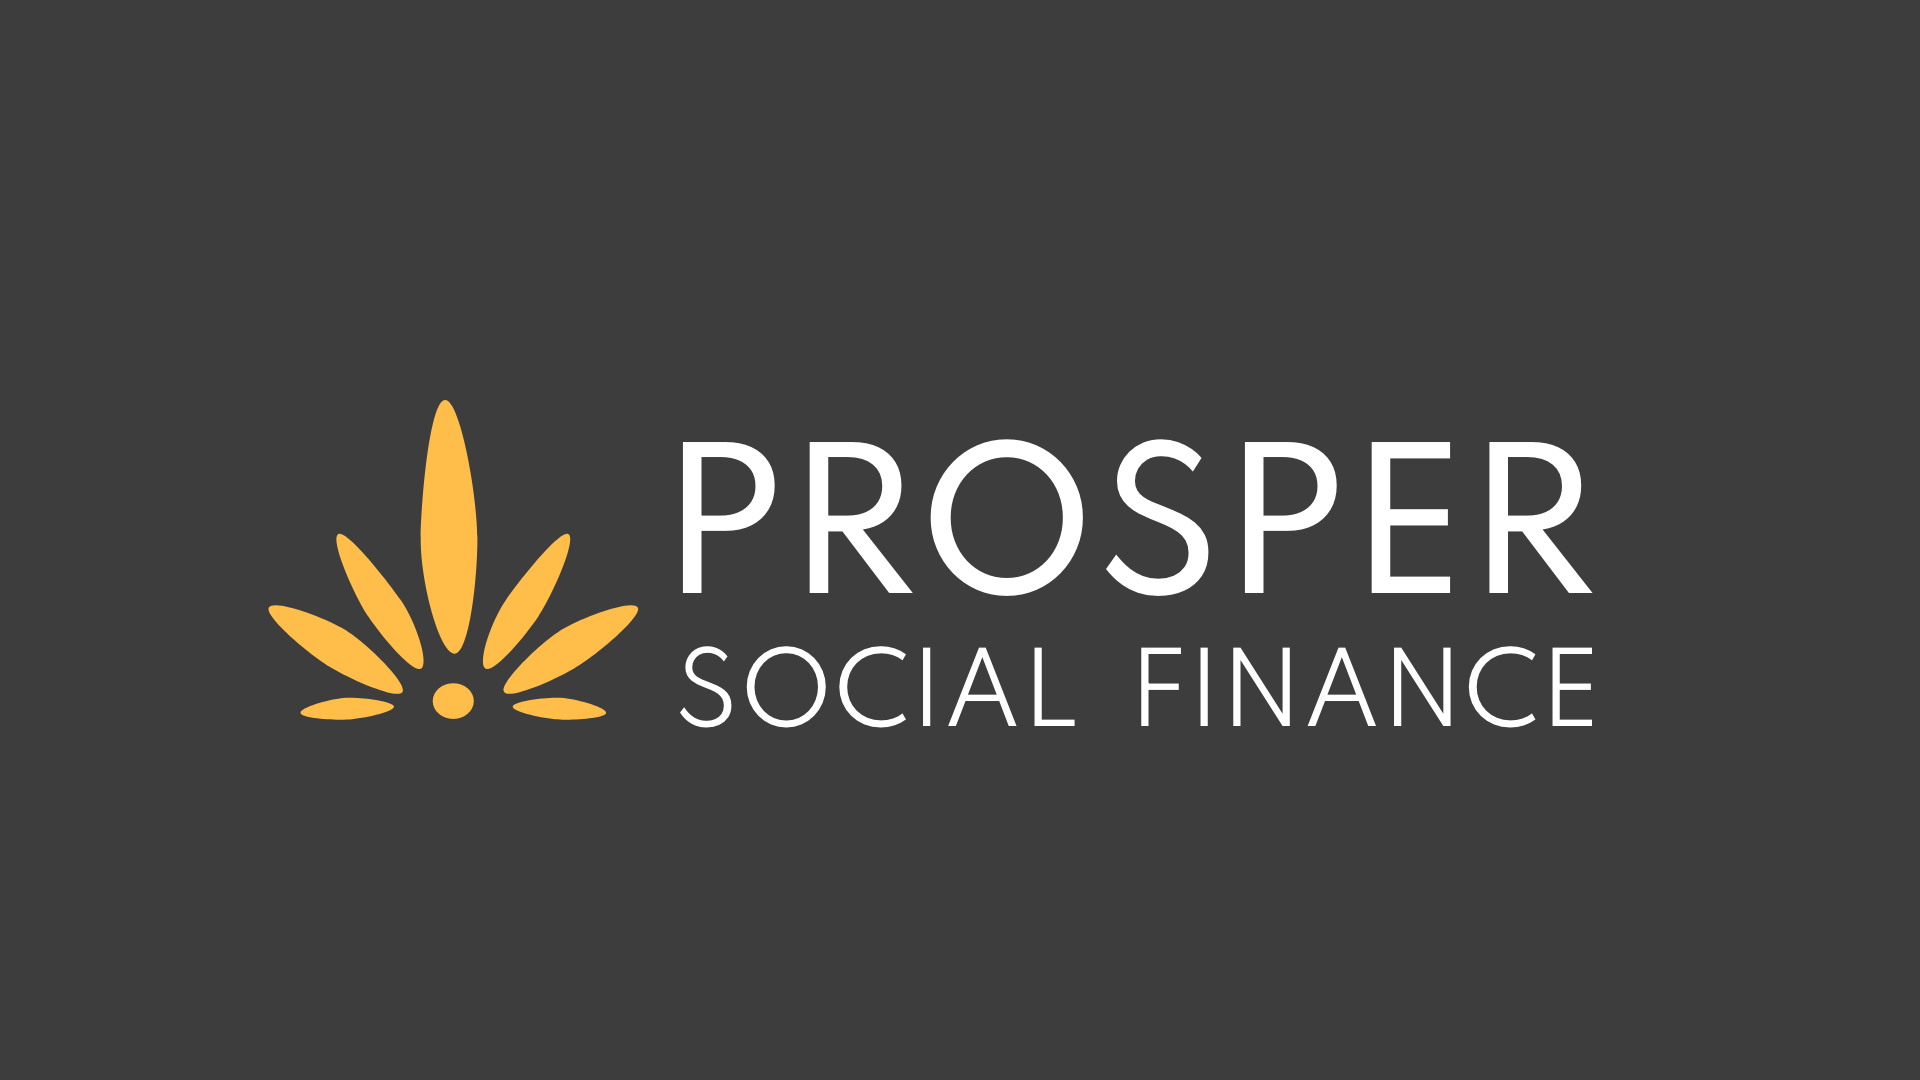 Prosper’s new logo